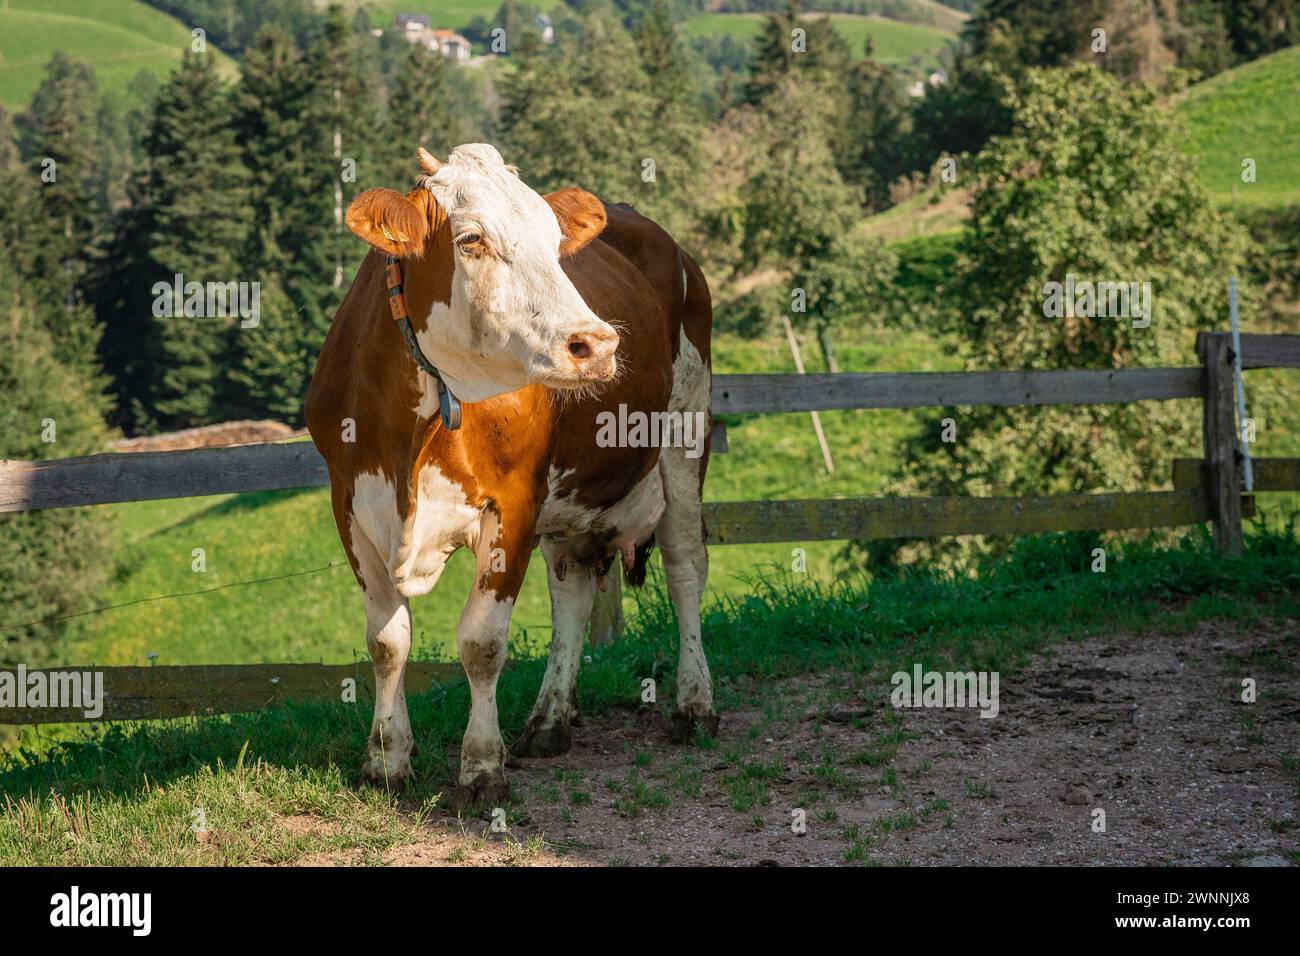 Porträt einer braunen und weißen Kuh, die auf dem Land herumläuft. Wunderschöne Kuh vor grüner Kulisse, umweltfreundlicher Bauernhof. Stockfoto